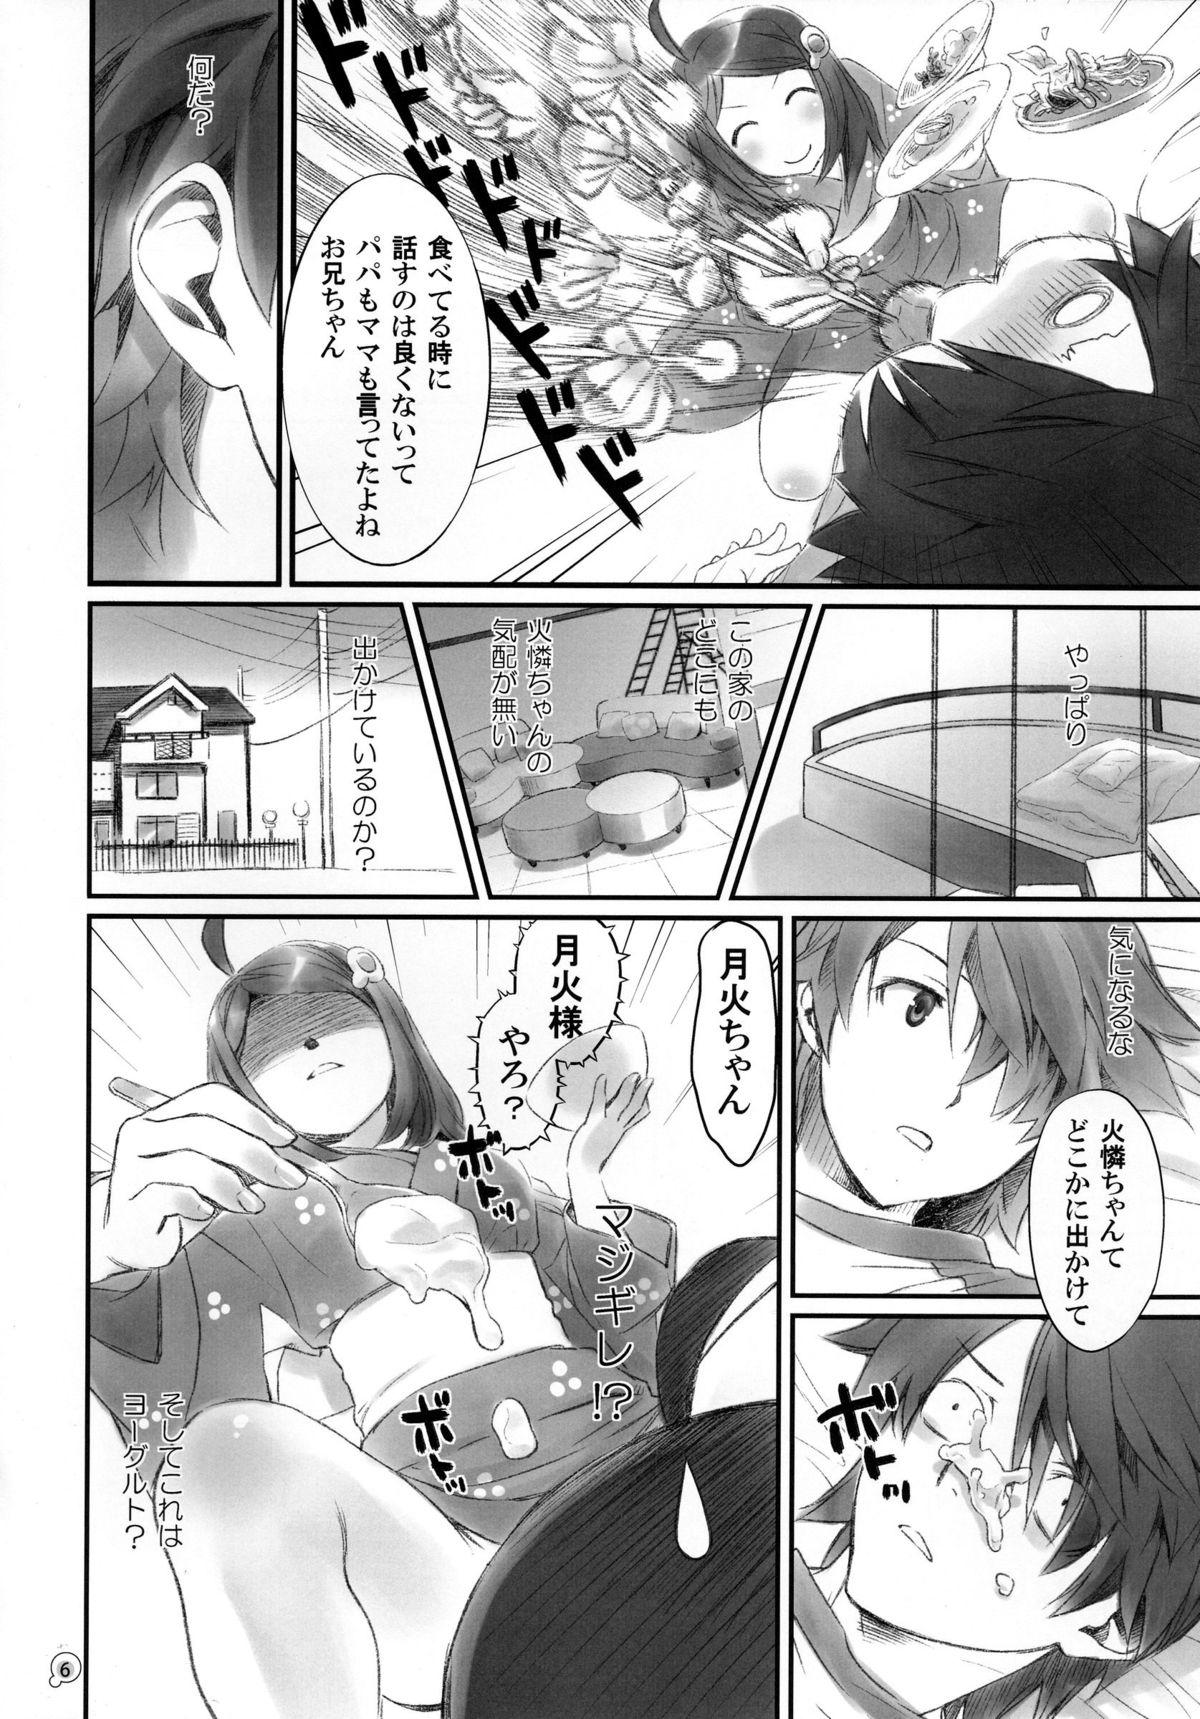 Banging Tsukihi Egg - Bakemonogatari Milfporn - Page 6